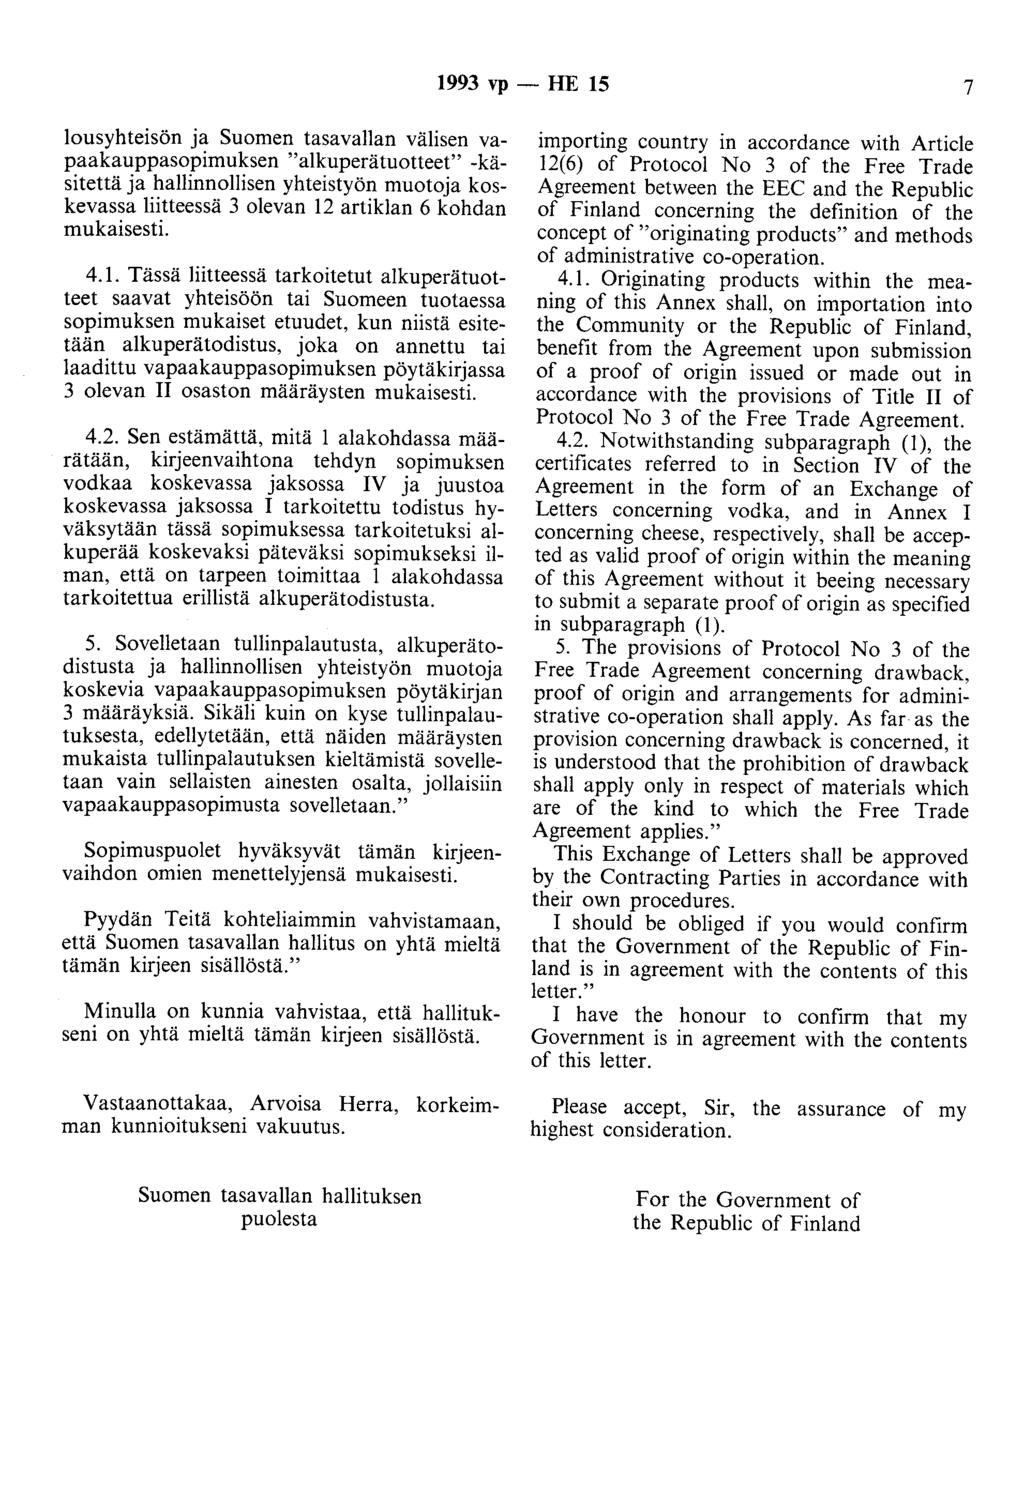 1993 vp - HE 15 7 lousyhteisön ja Suomen tasavallan välisen vapaakauppasopimuksen "alkuperätuotteet" -käsitettä ja hallinnollisen yhteistyön muotoja koskevassa liitteessä 3 olevan 12 artiklan 6